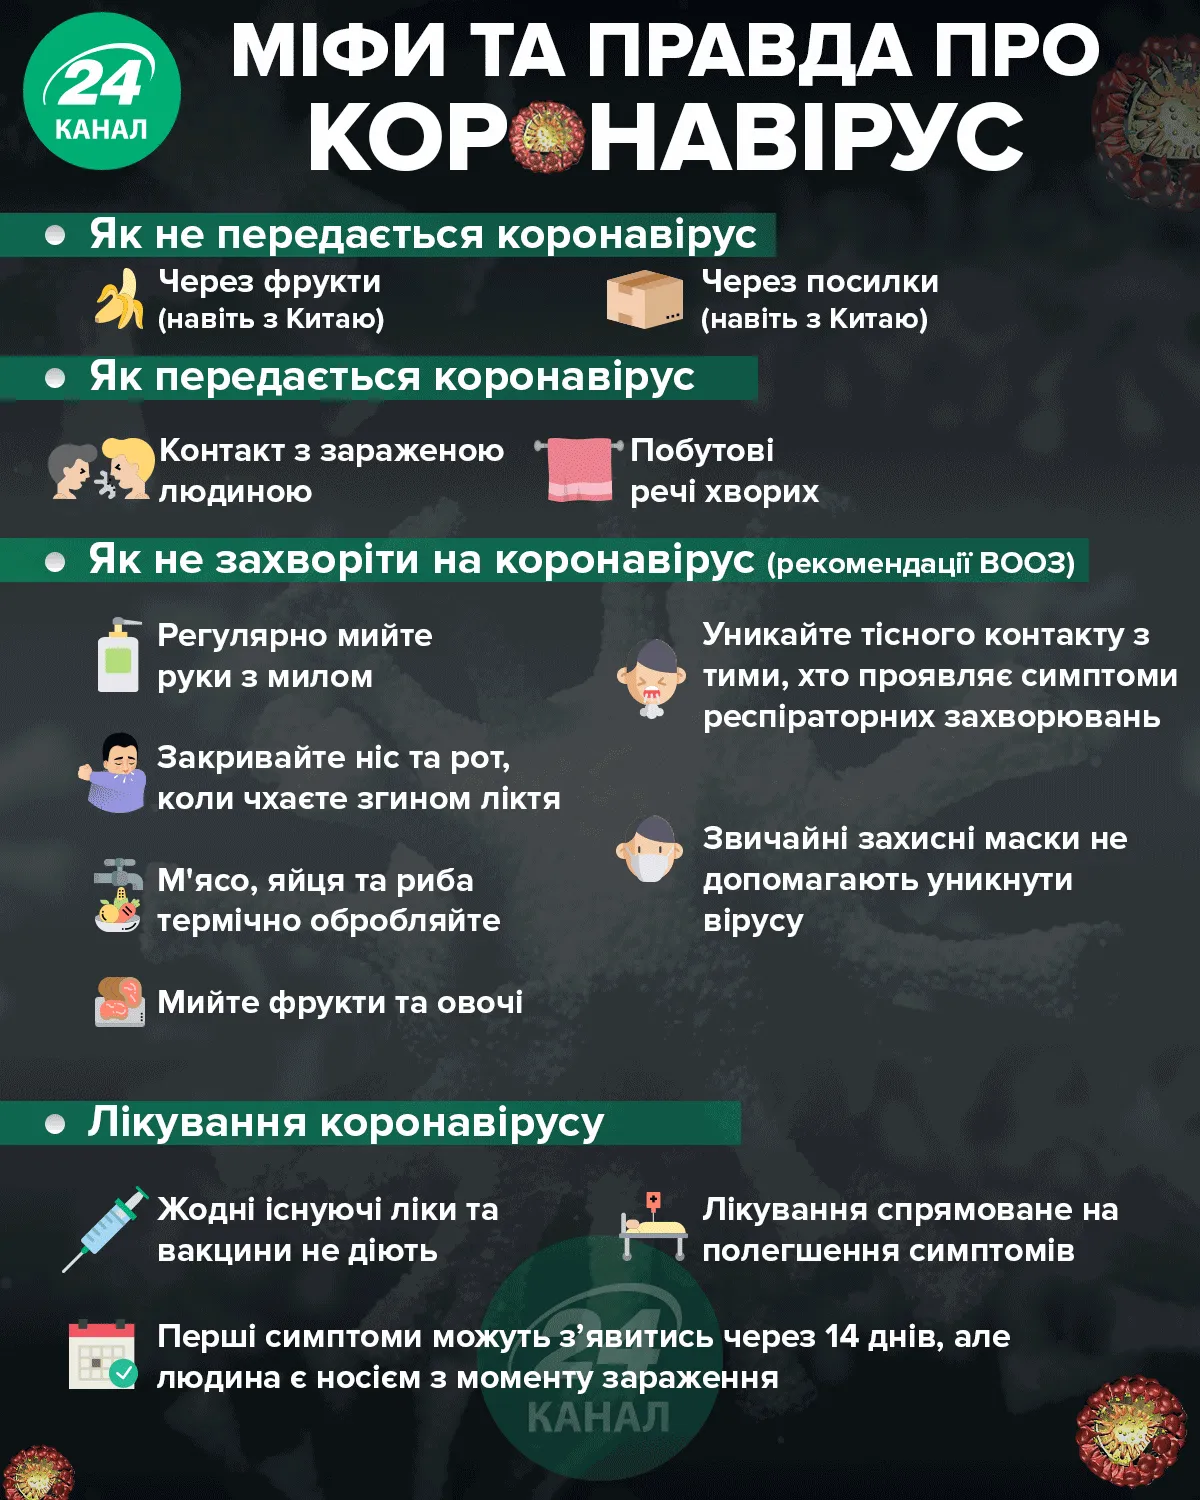 Міфи та правда про коронавірус / Картинка 24 каналу